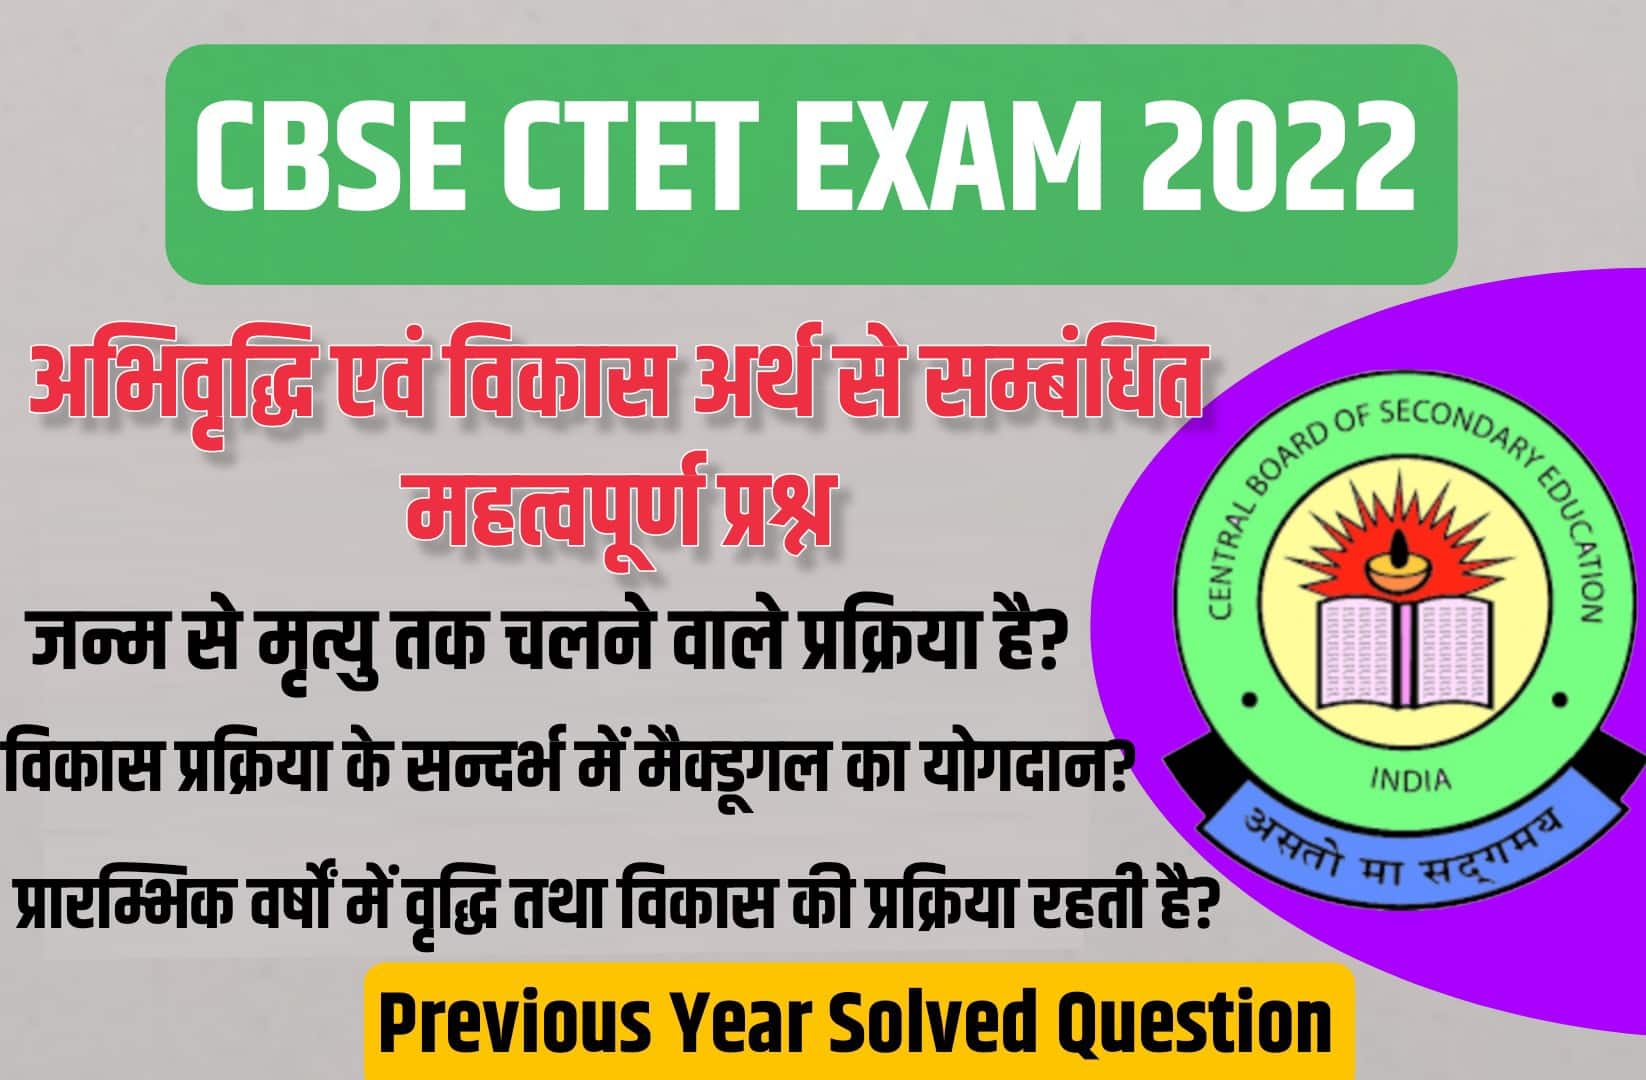 CBSE CTET Exam 2022 | अभिवृद्धि एवं विकास अर्थ से सम्बंधित परीक्षा में पूछें गये महत्वपूर्ण प्रश्न